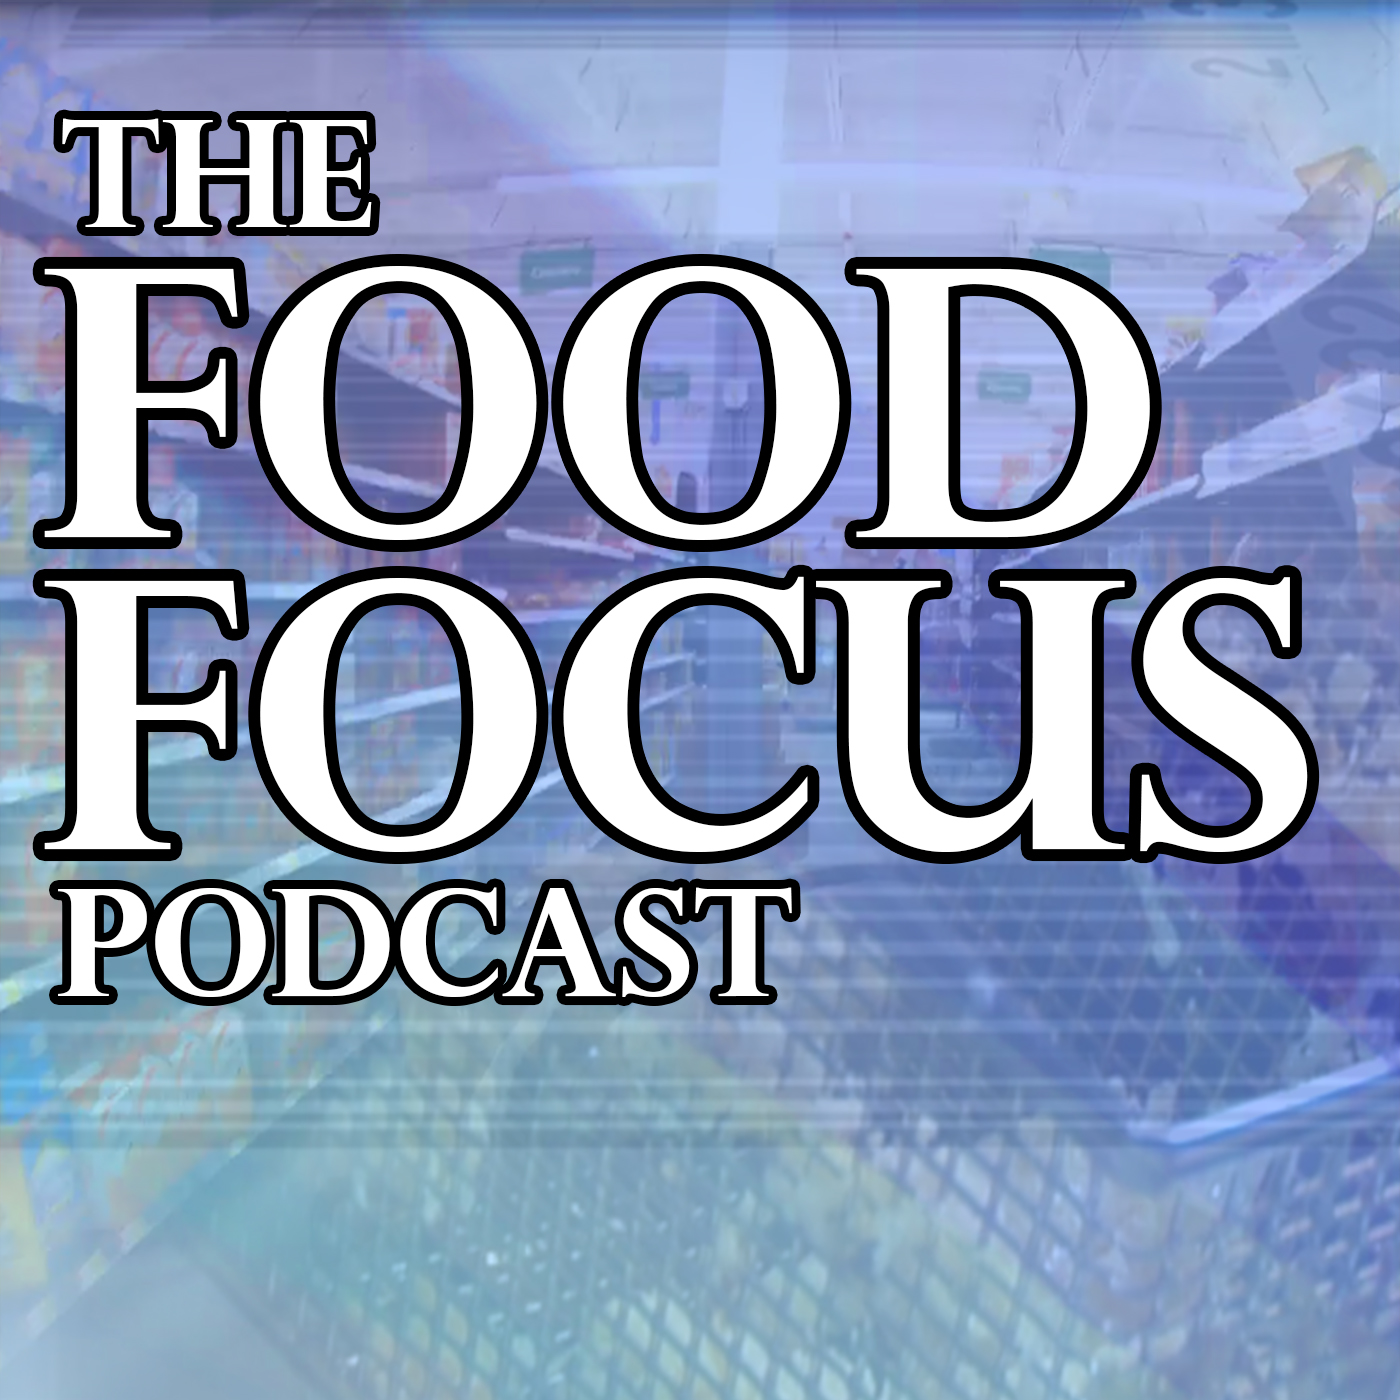 Food Focus 2/8/17 – Chipotle Battles Market Cynicism, a Canadian Staple Enters U.S.